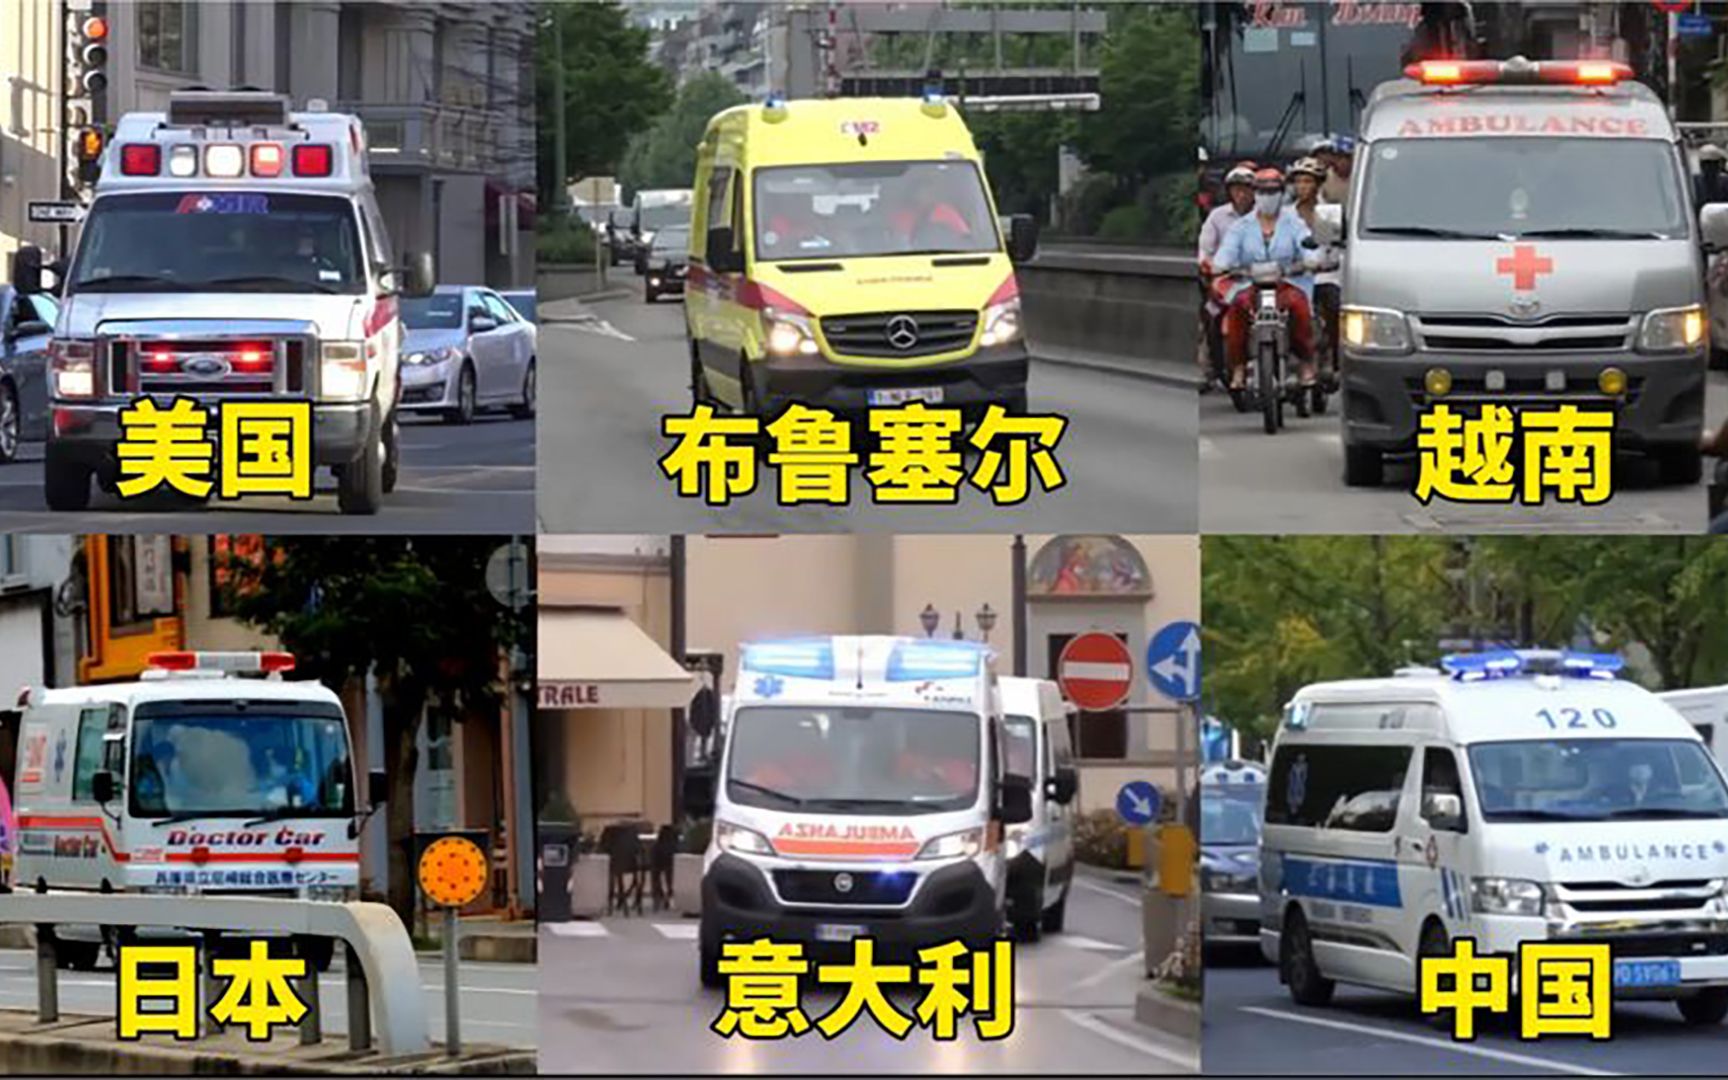 不同国家的救护车图片